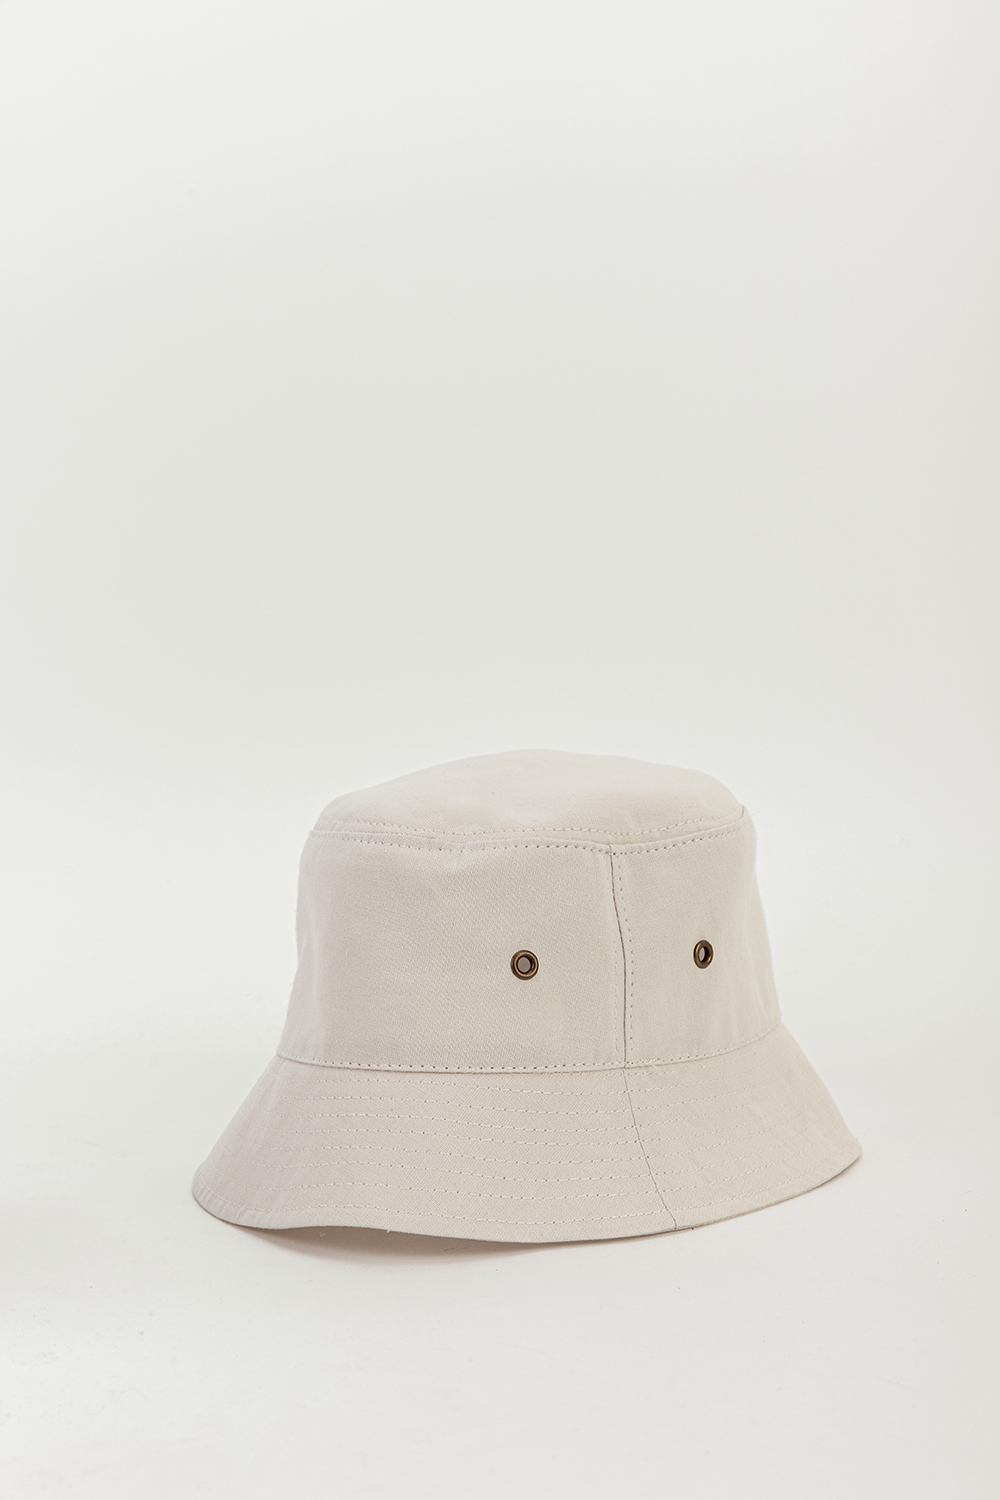 Pilos Kırık Beyaz Kadın Şapka